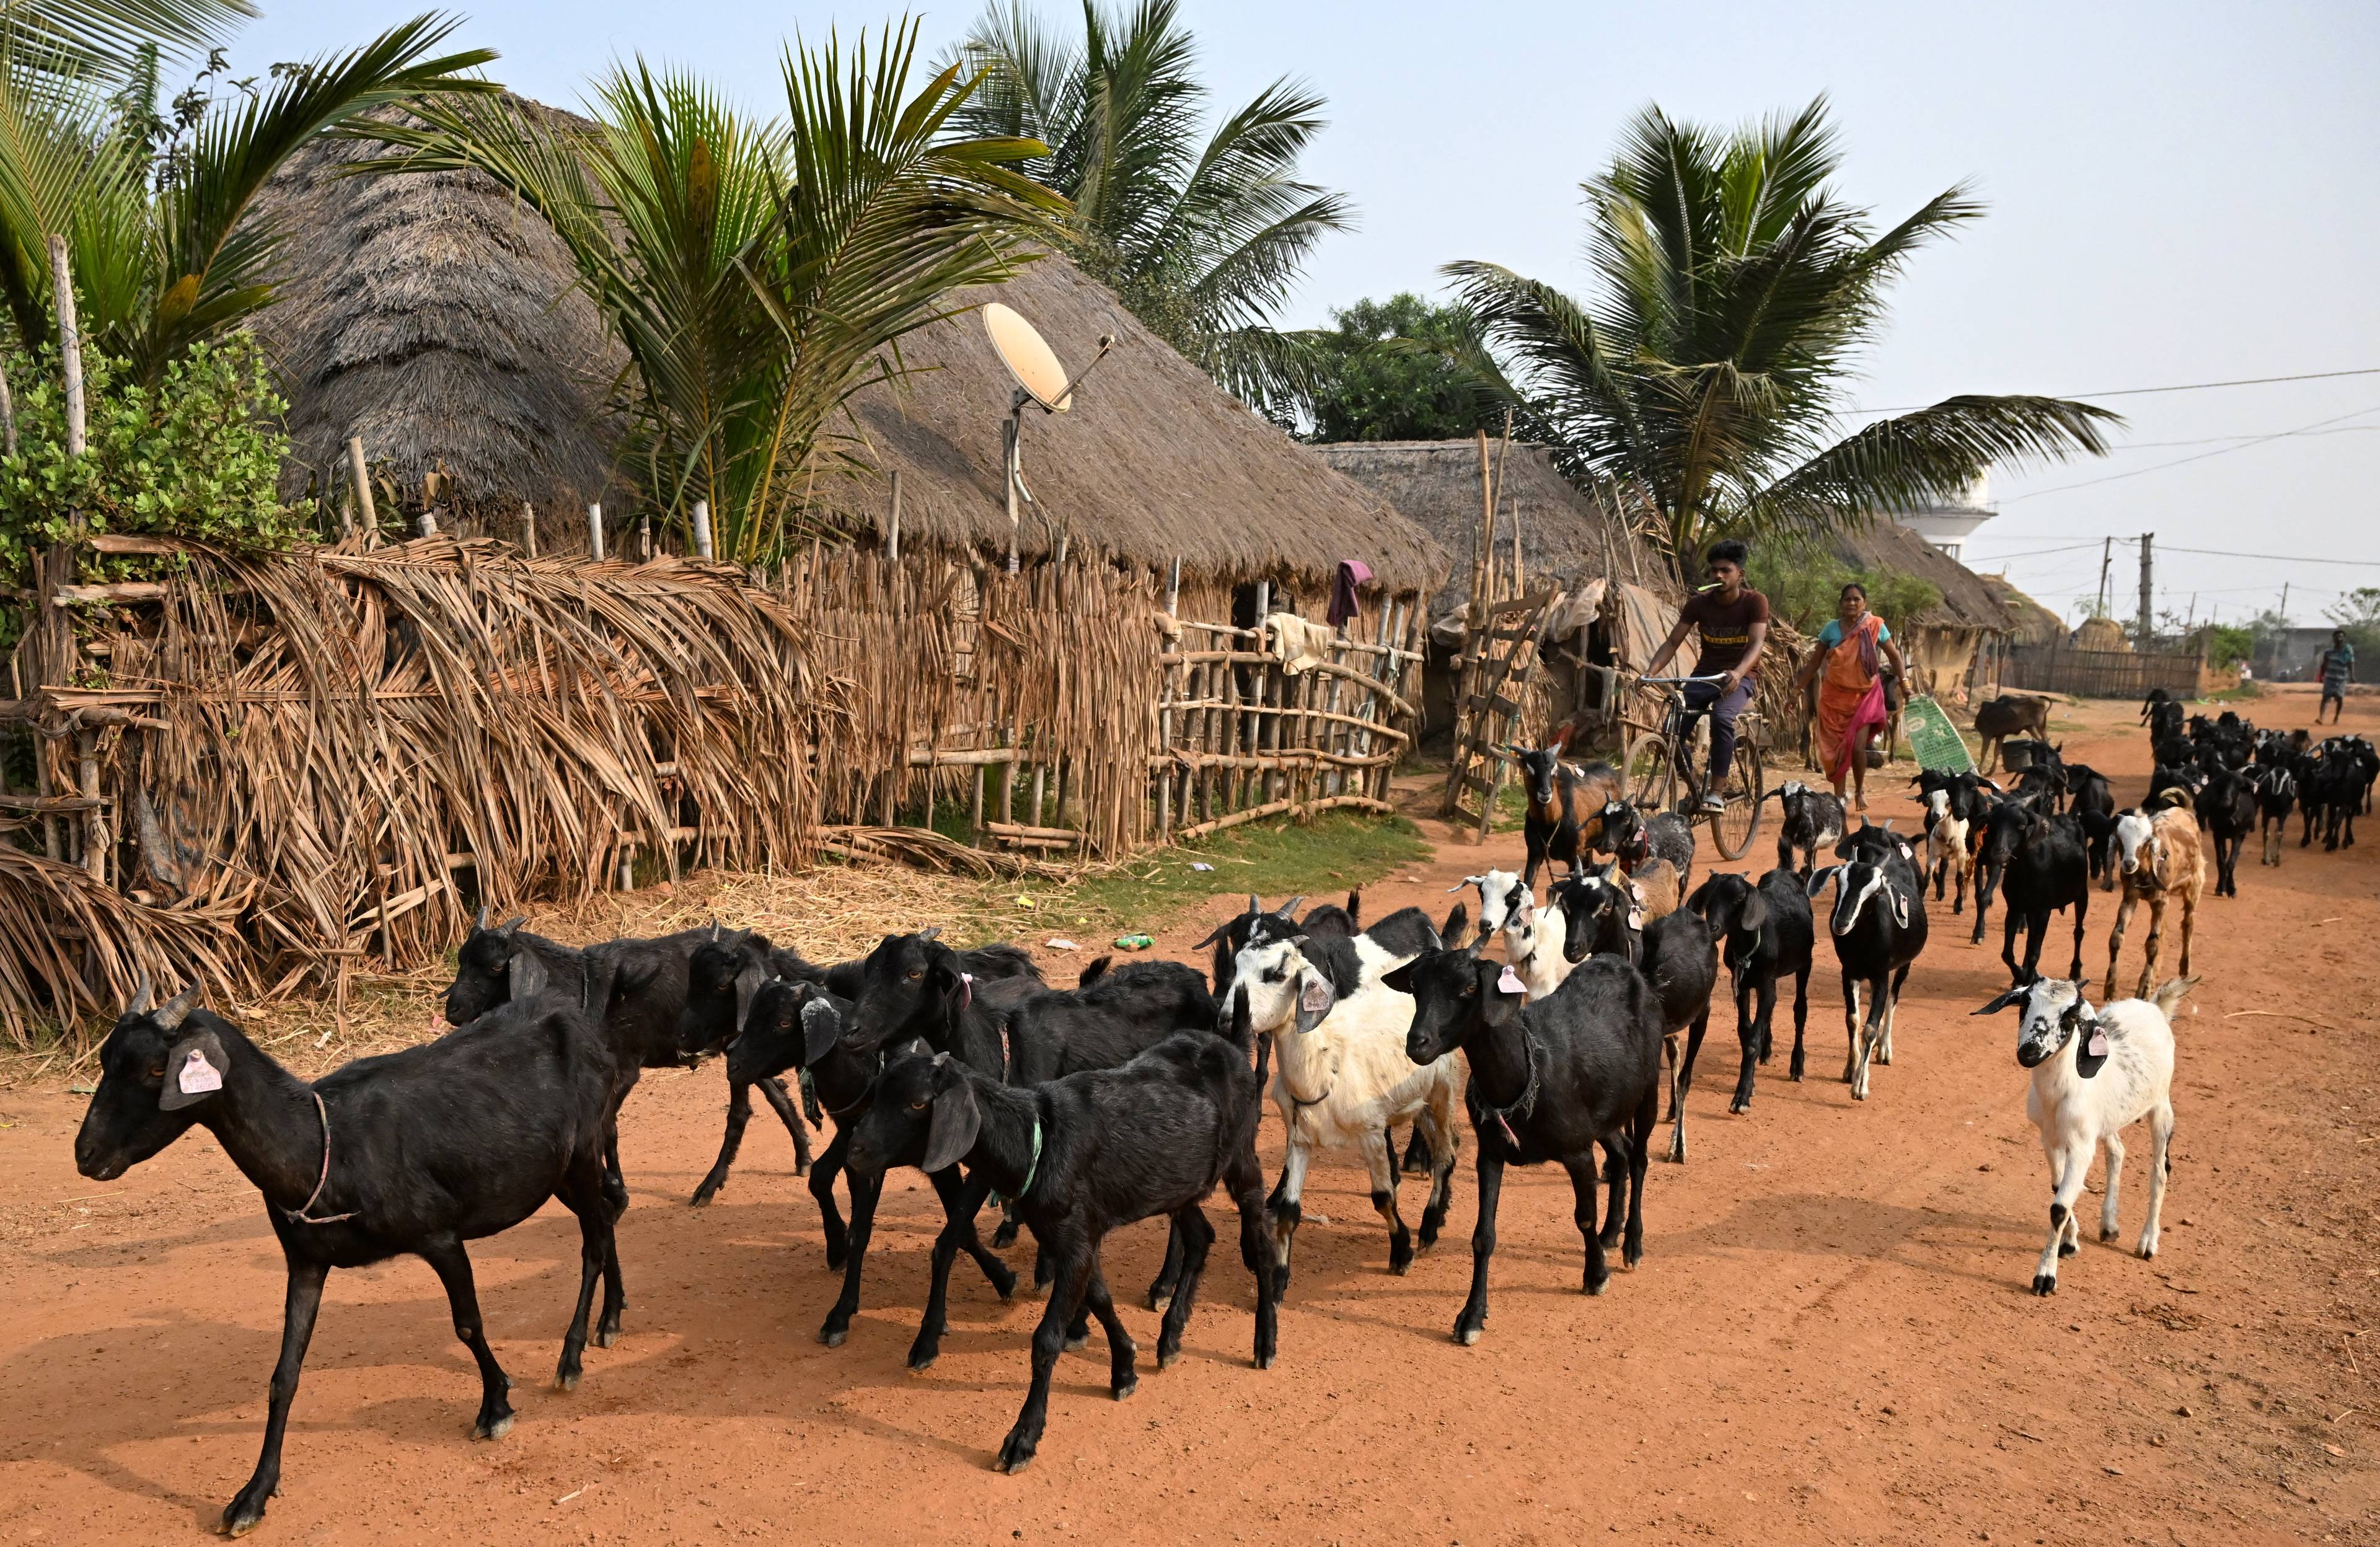 wieśniacy prowadzący stado bydła przez wioskę, w tle palmy